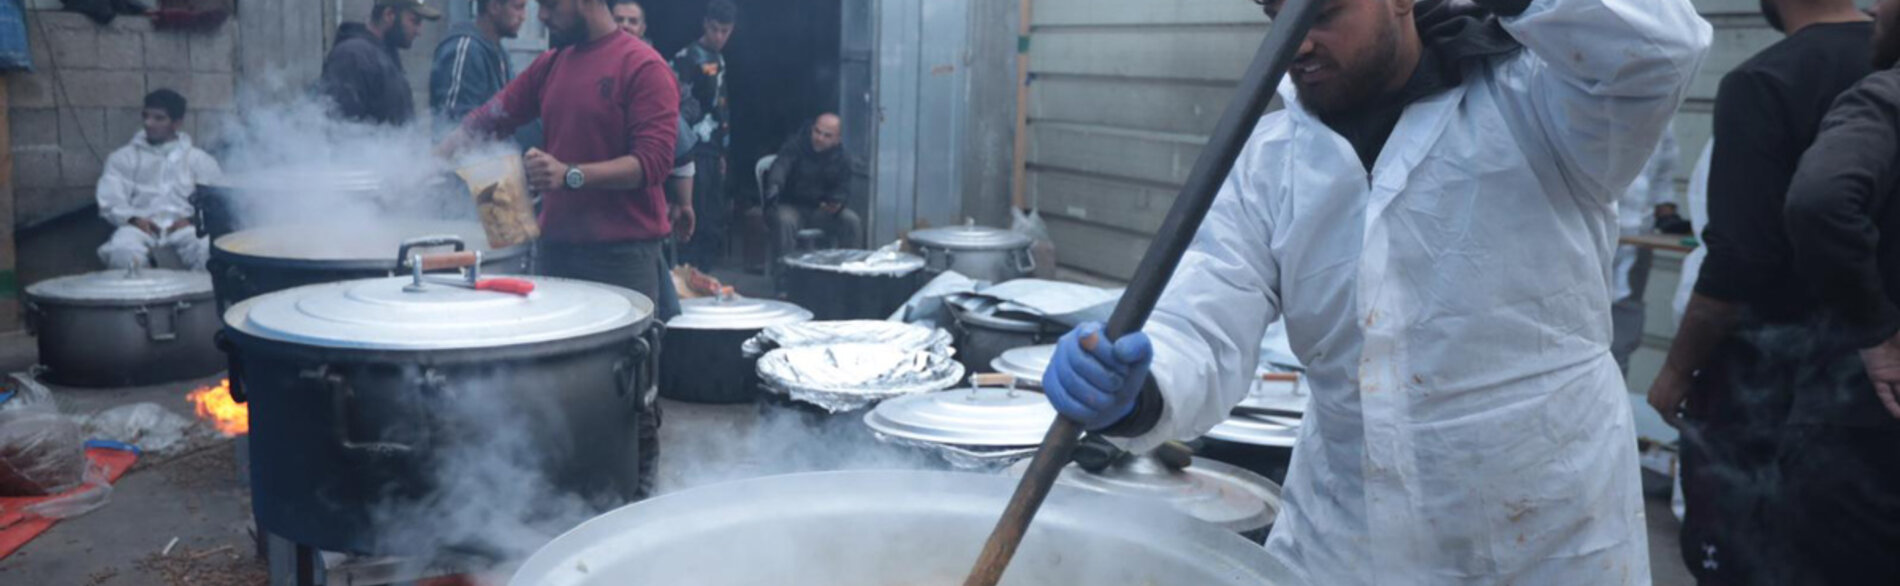 عاملون في المجال الإنساني يعدّون وجبات الإفطار الساخنة للأسر النازحة في جنوب غزة خلال شهر رمضان. تم تنفيذ هذا المشروع من قبل منظمة أنيرا والمطبخ المركزي العالمي، ويُعدّ هذا المشروع واحدًا من ضمن 122 مشروع إغاثي يحظى حاليًا بالدعم من الصندوق الإنساني للأرض الفلسطينية المحتلة. تصوير منظمة أنيرا